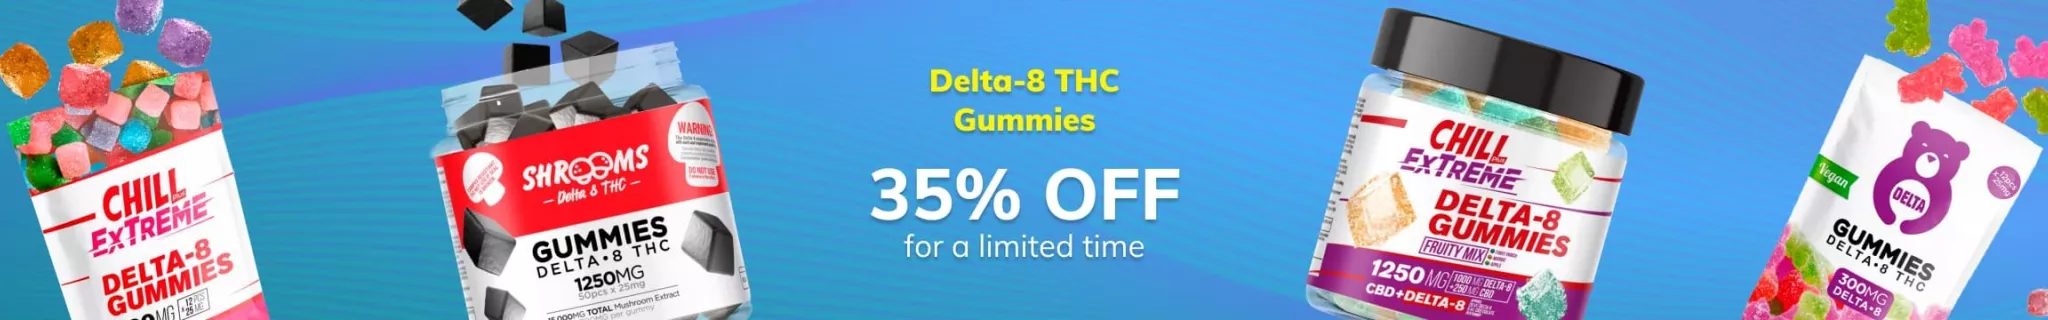 Delta-8 THC Gummies 35% OFF